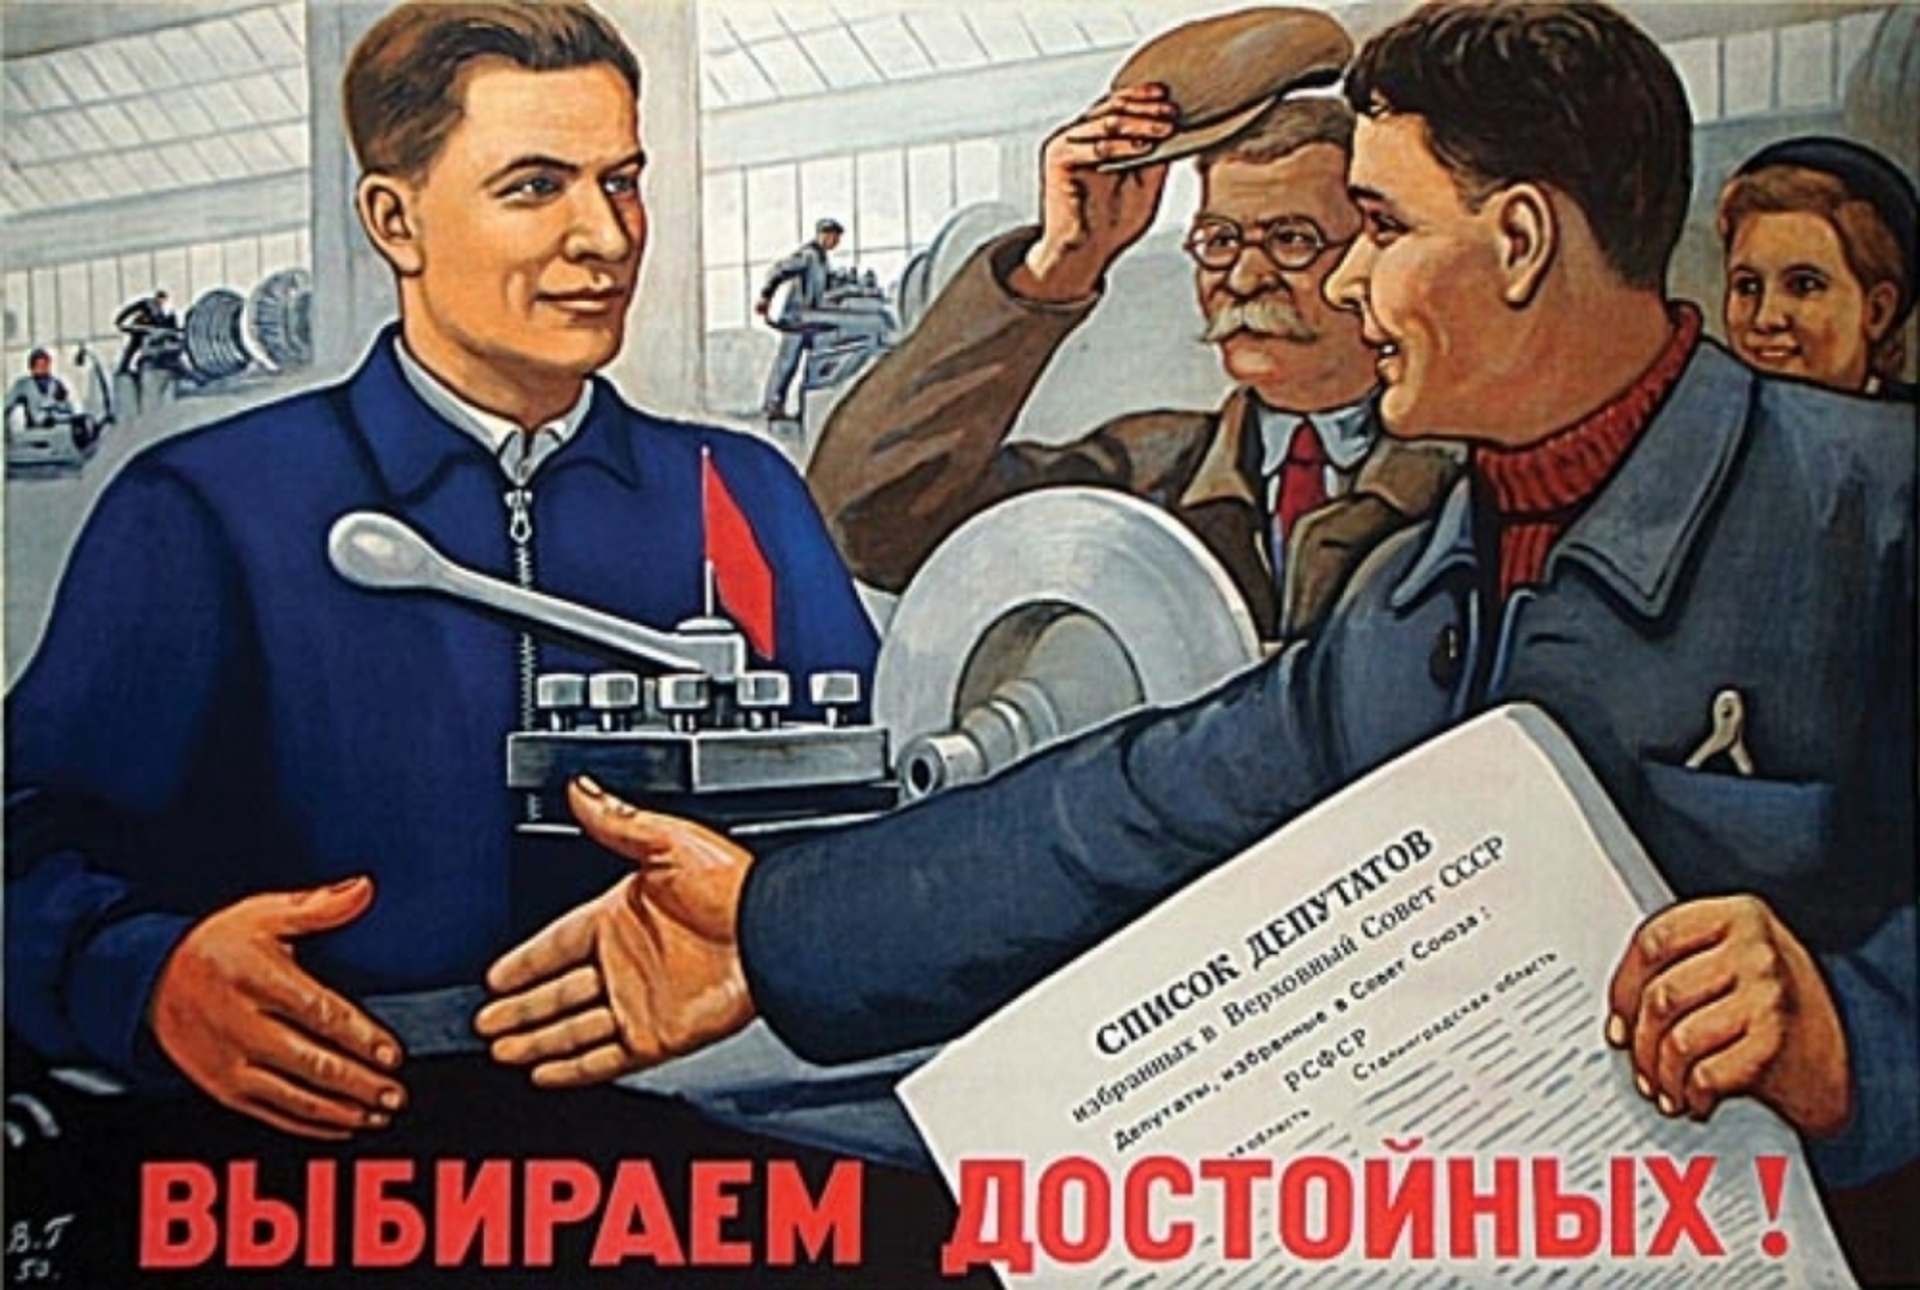 Во время выборов рабочие дни. Советские плакаты. Плакат депутата. Советские предвыборные плакаты. Плакат выберем достойных.